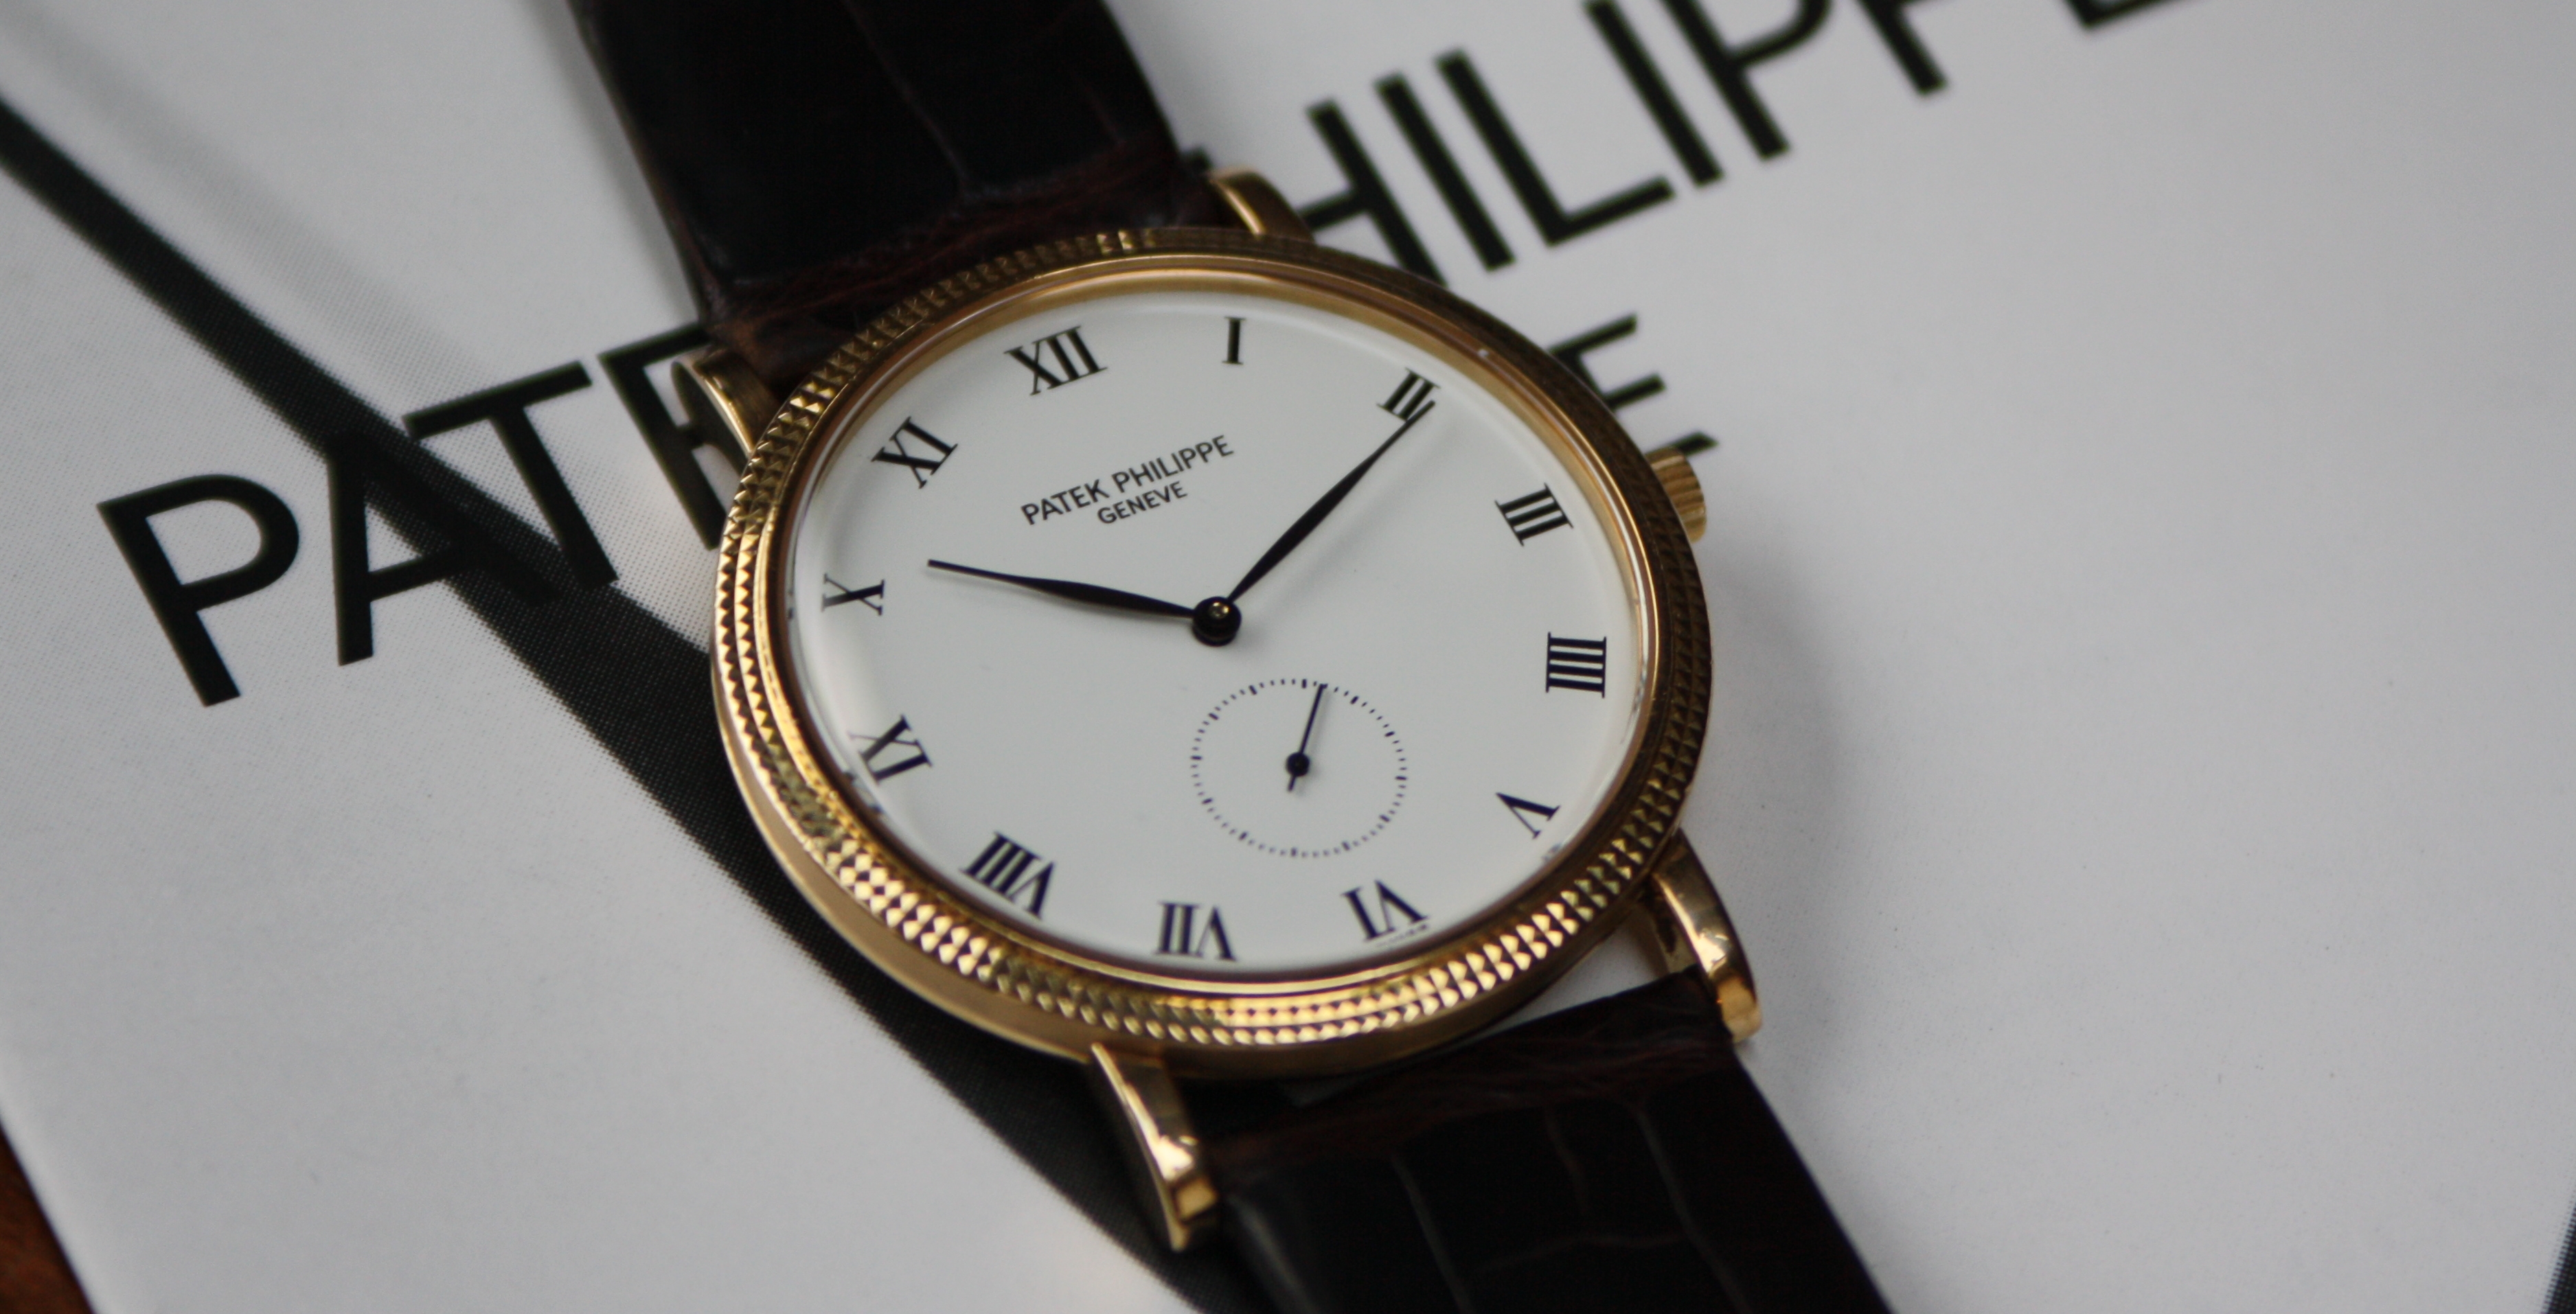 Patek Philippe horloge 3919J